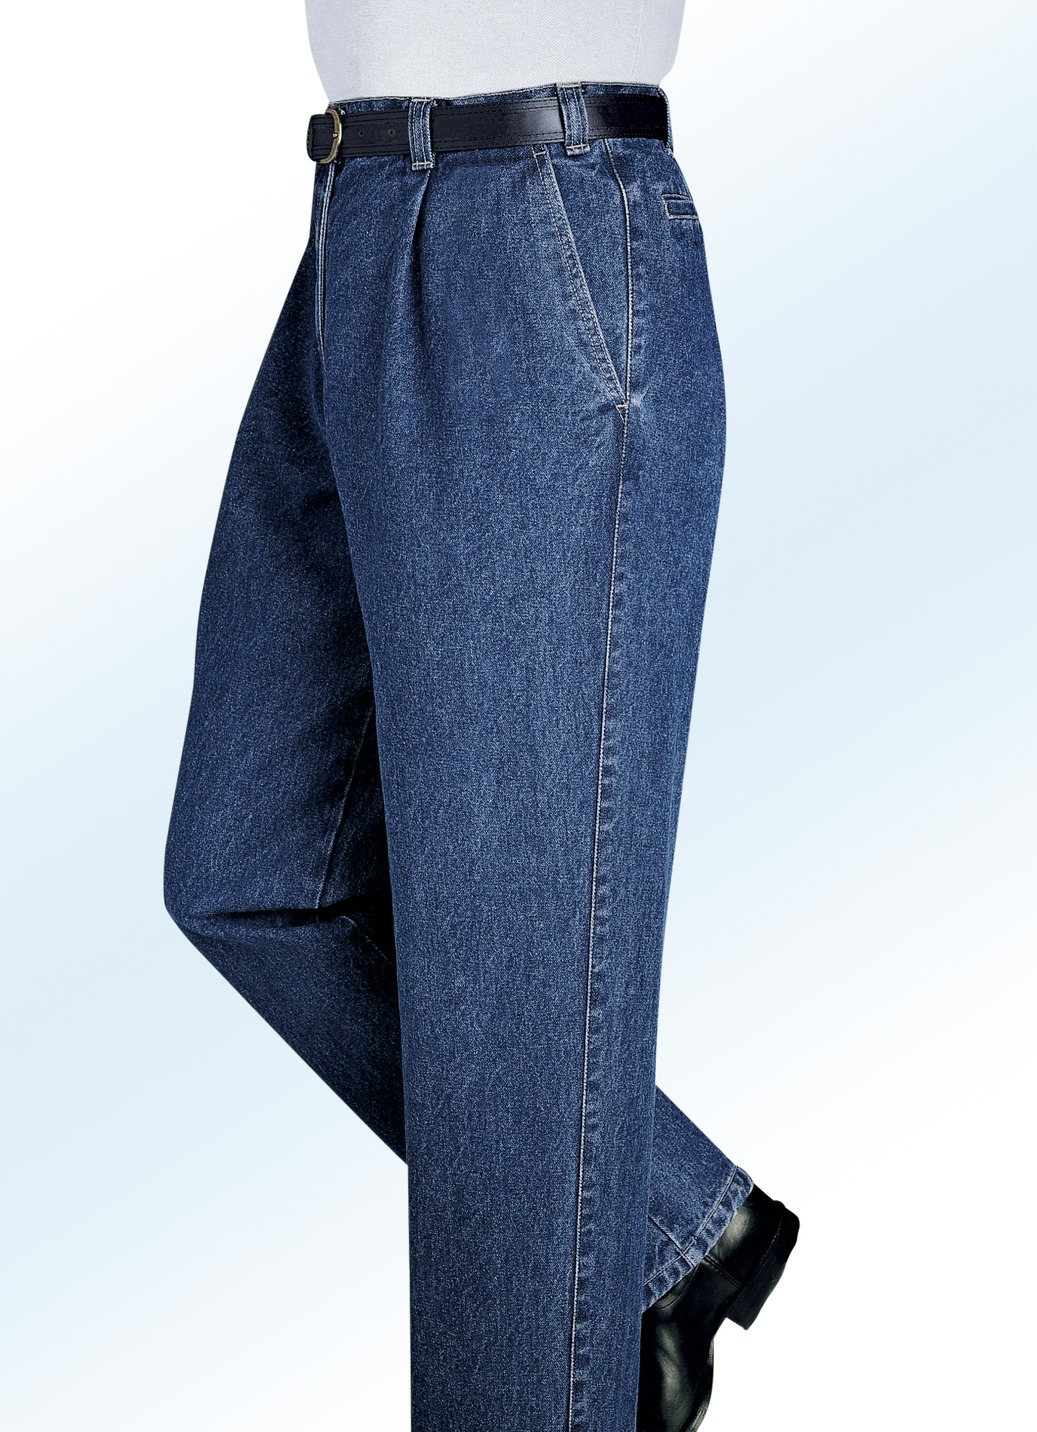 "Francesco Botti"-Jeans in 2 Qualitäten und 3 Farben, Qualität 2. Qualität, Jeansblau, Größe 60 von FRANCESCO BOTTI